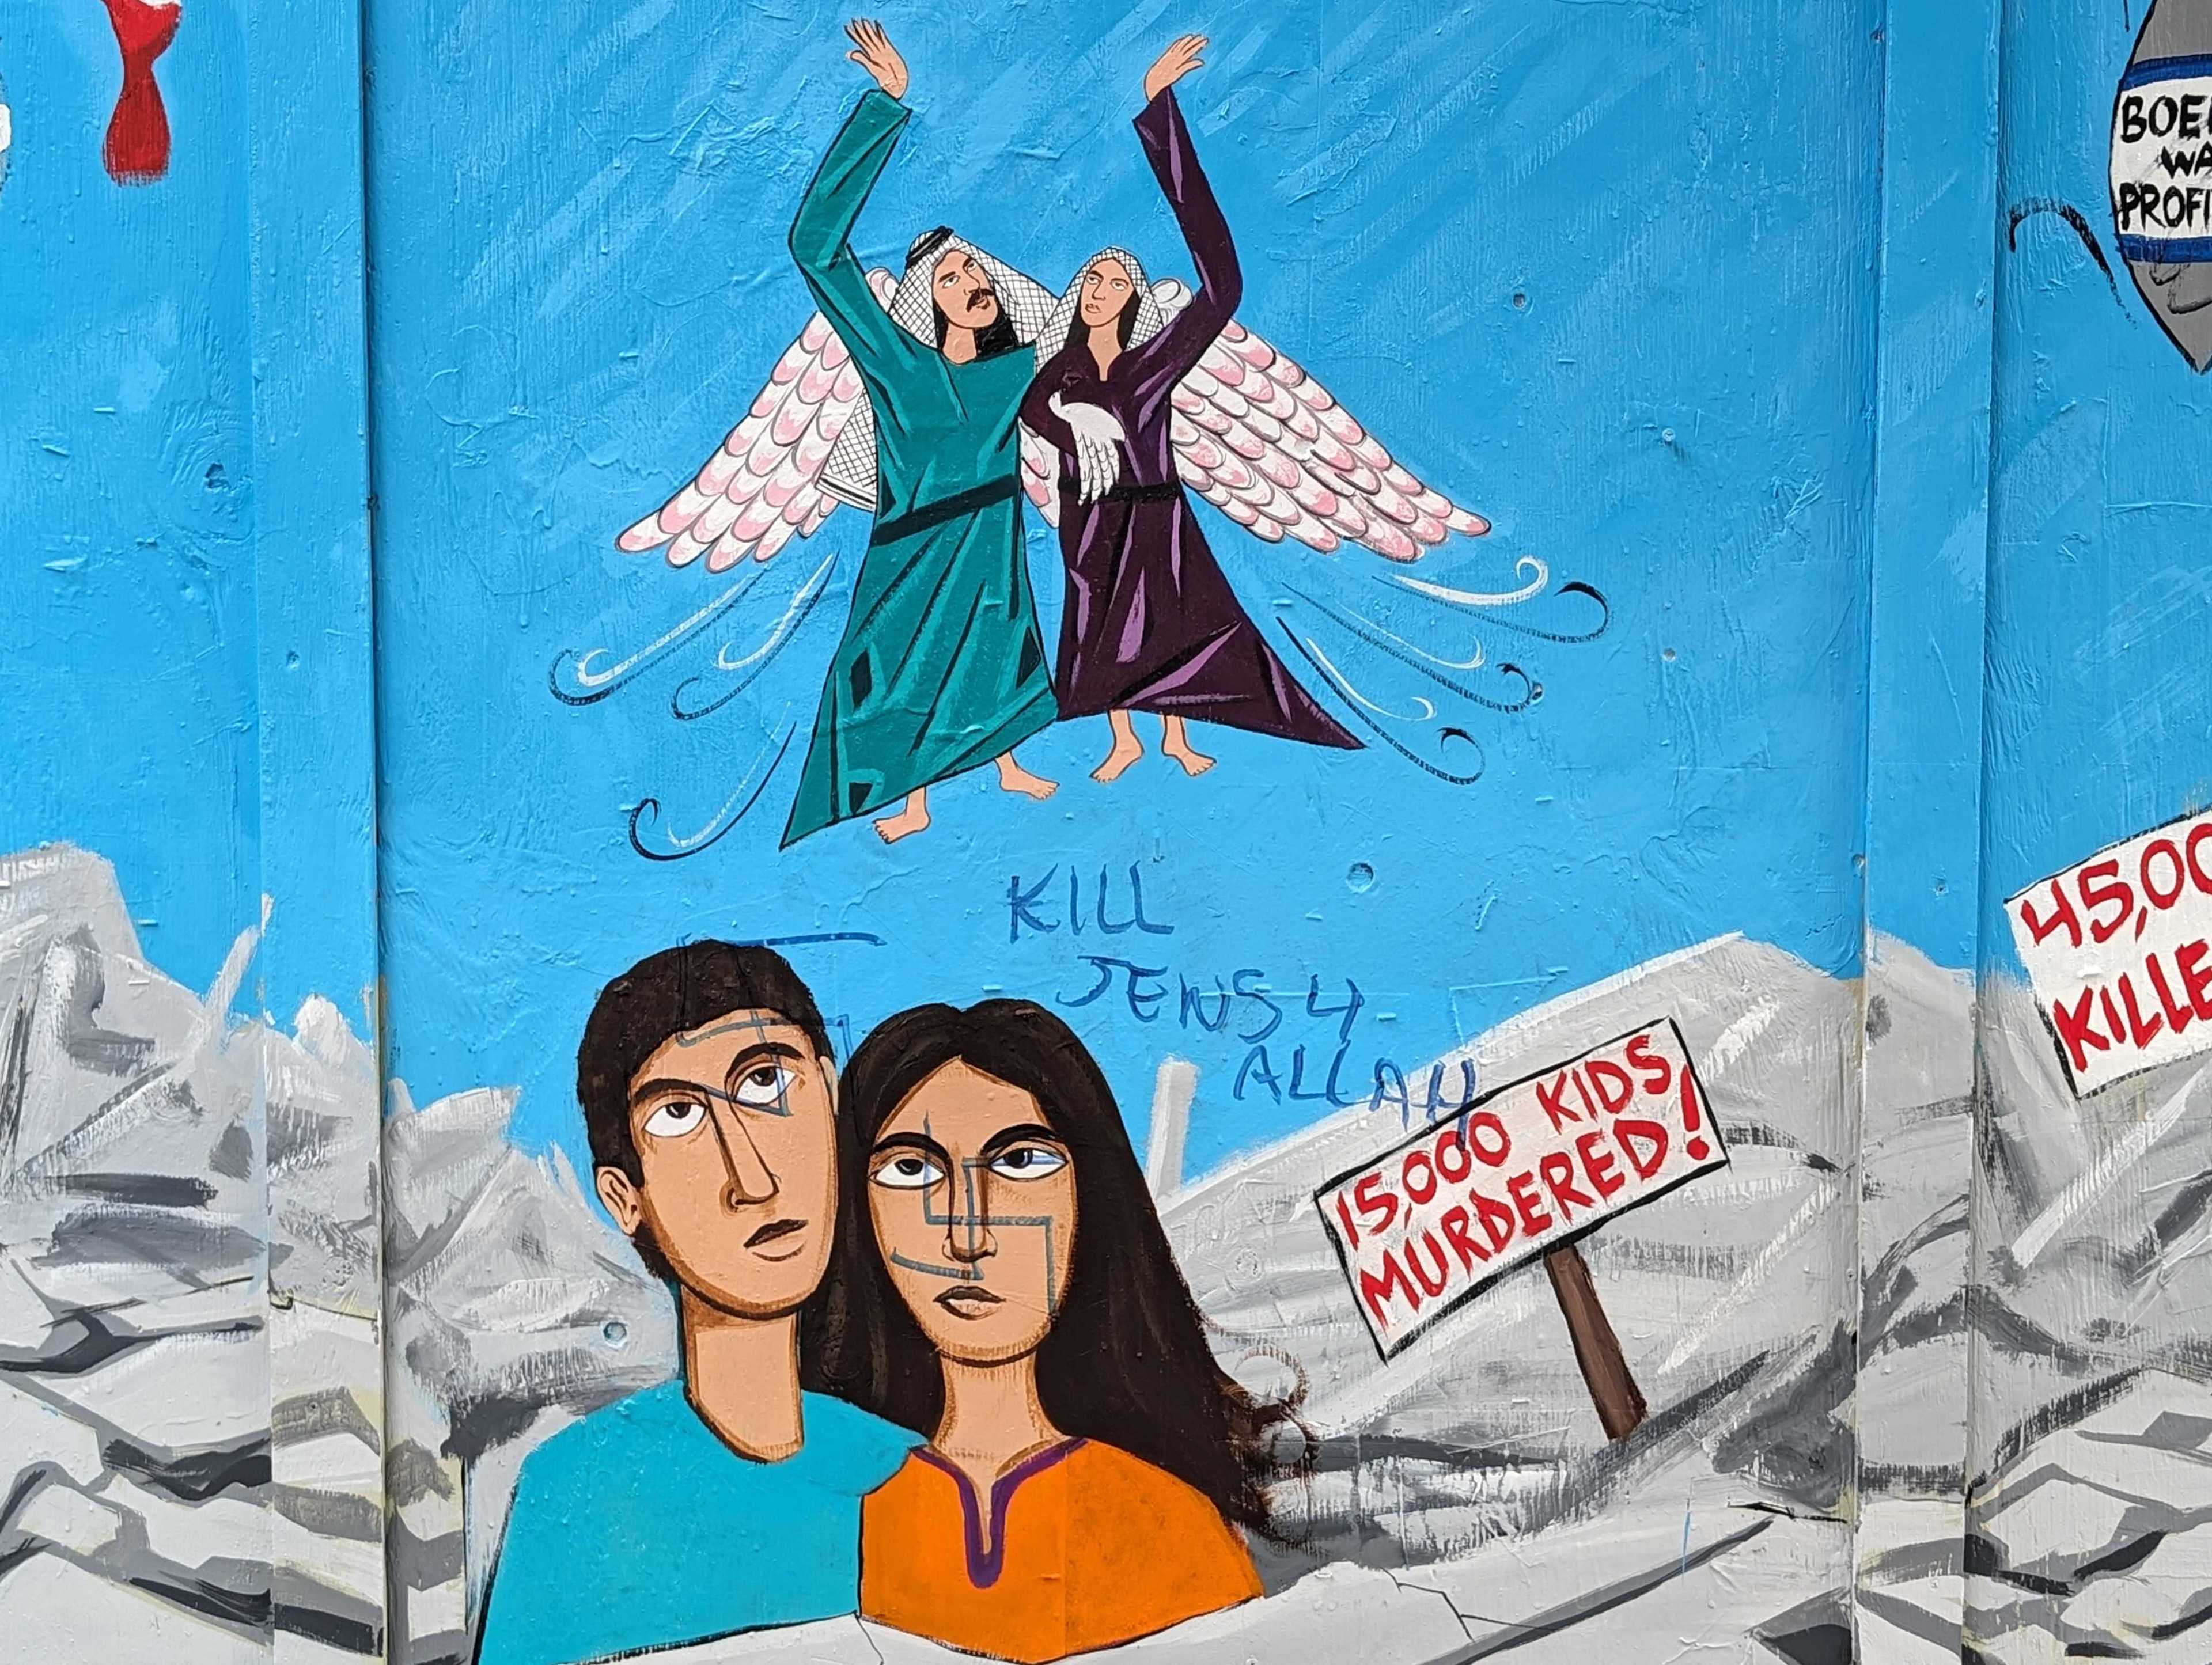 Noe Valley mural defaced